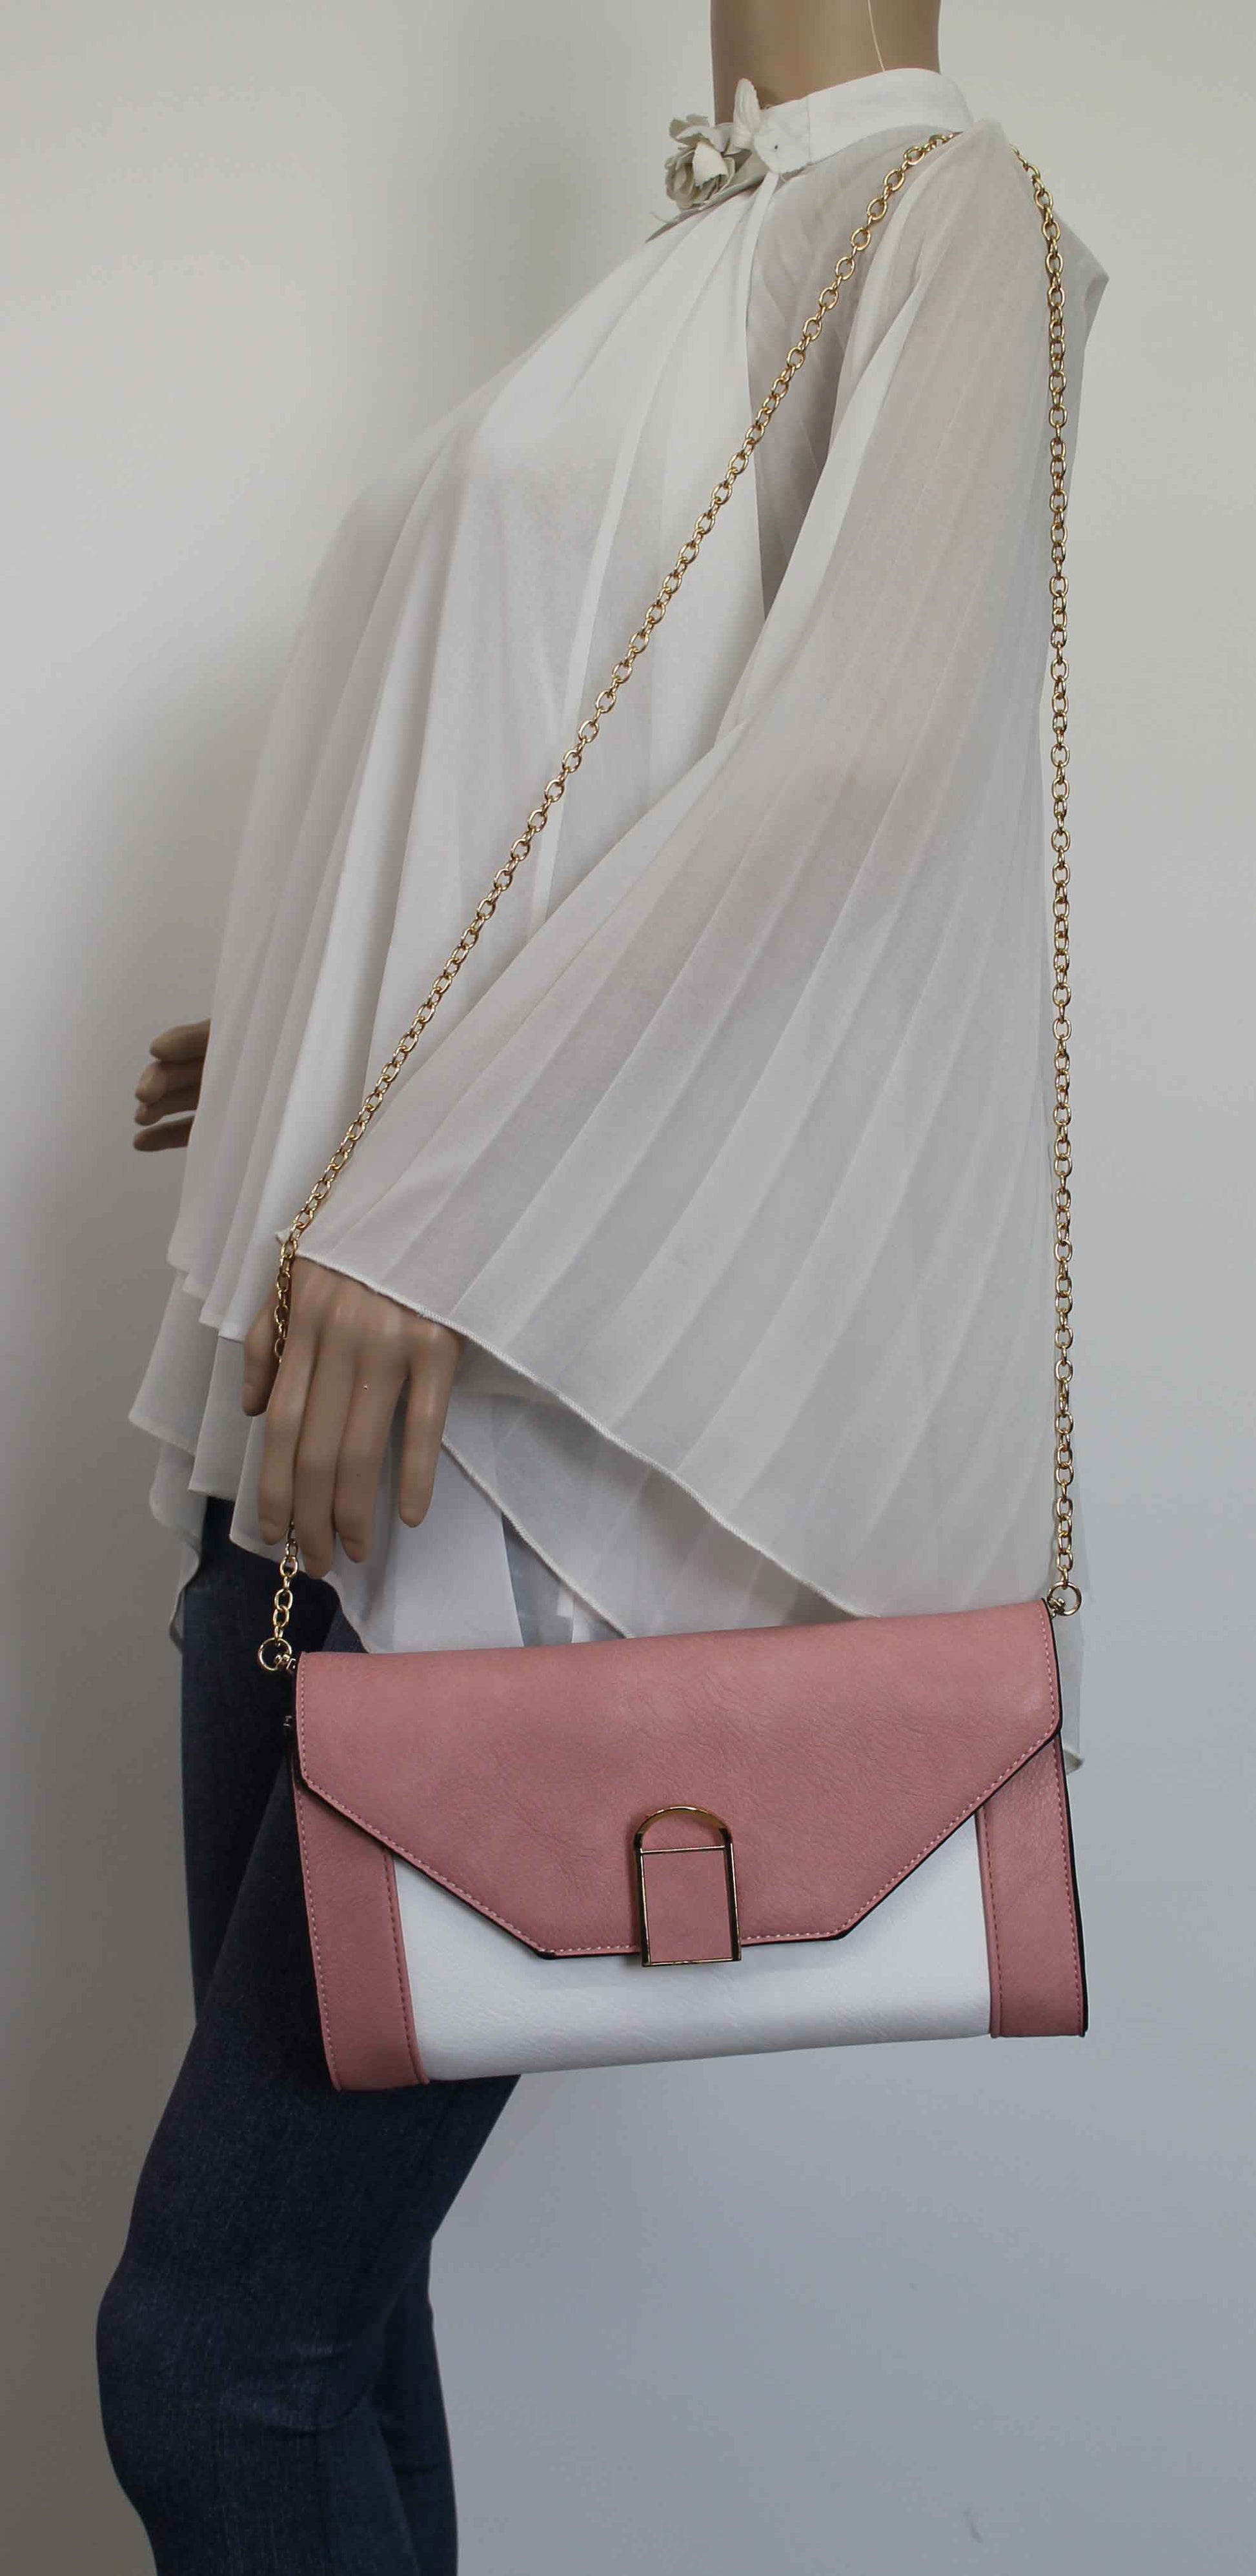 SWANKYSWANS Sydney Clutch Bag Pink Cute Cheap Clutch Bag For Weddings School and Work